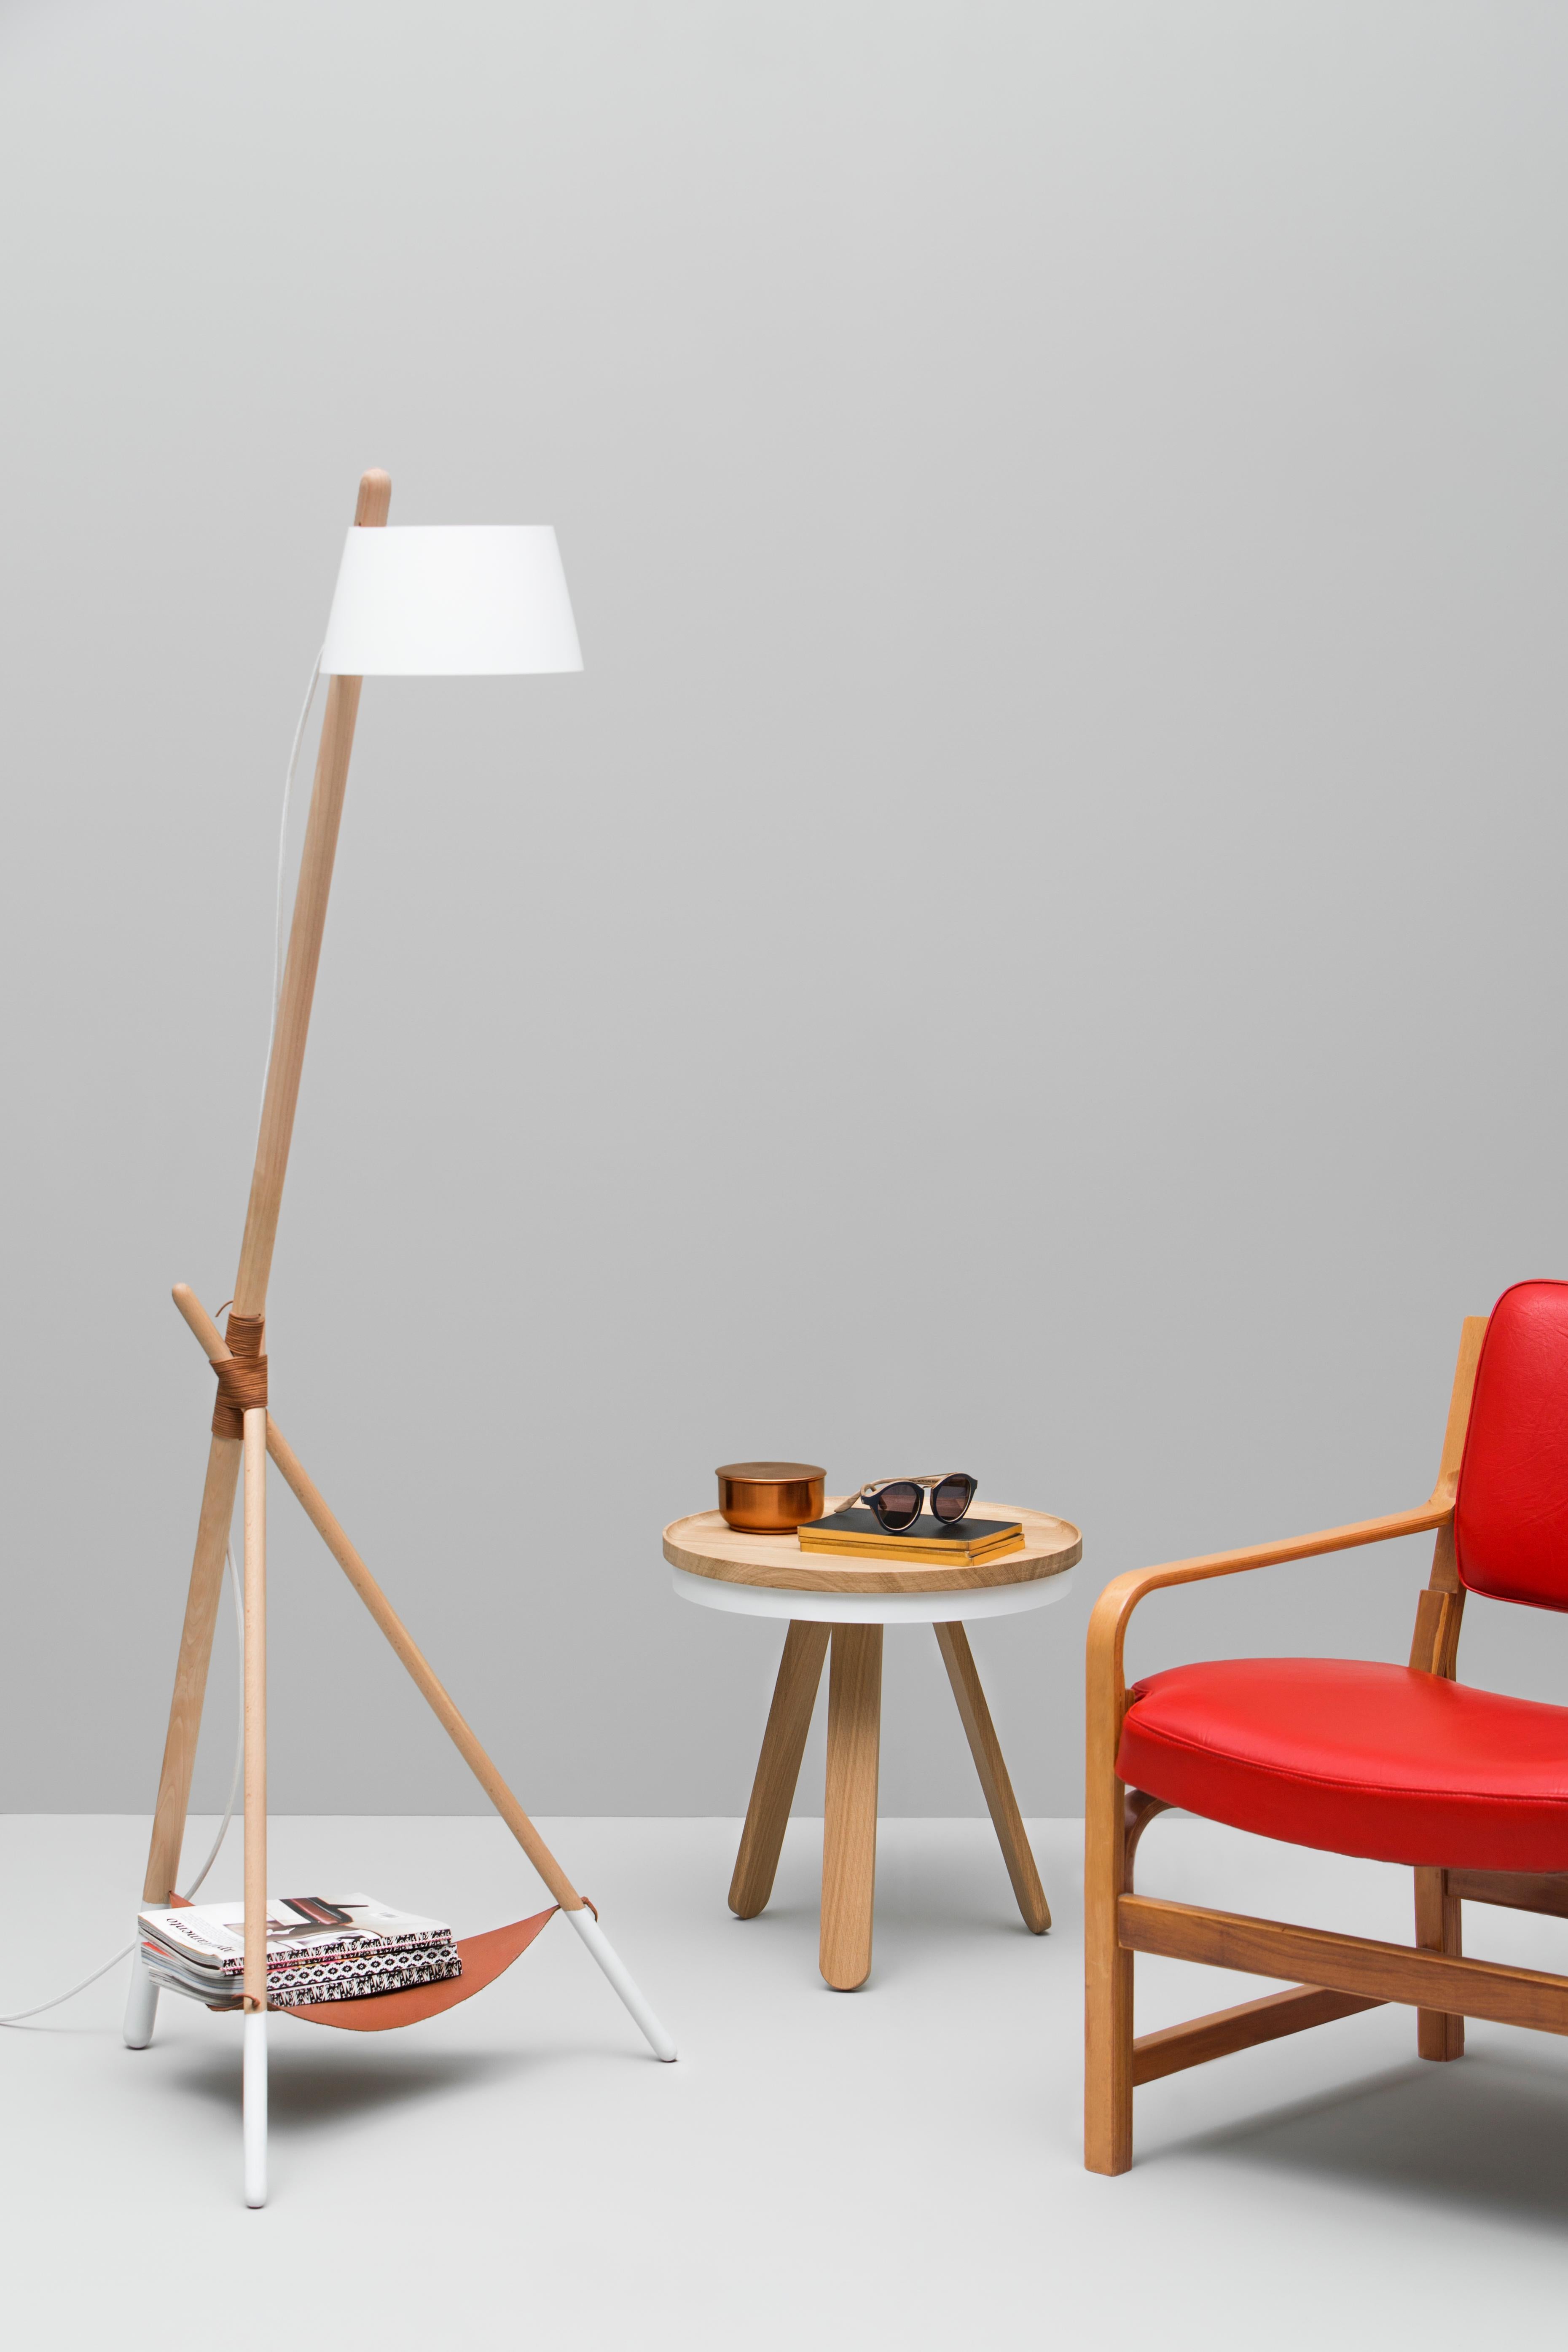 La lampe de taille moyenne de la famille Ka est une lampe sur pied standard en bois qui diffuse une lumière directe comme un lampadaire de lecture. Elle suit surtout la philosophie des meubles en bois et minimaux du design scandinave ; semblable au